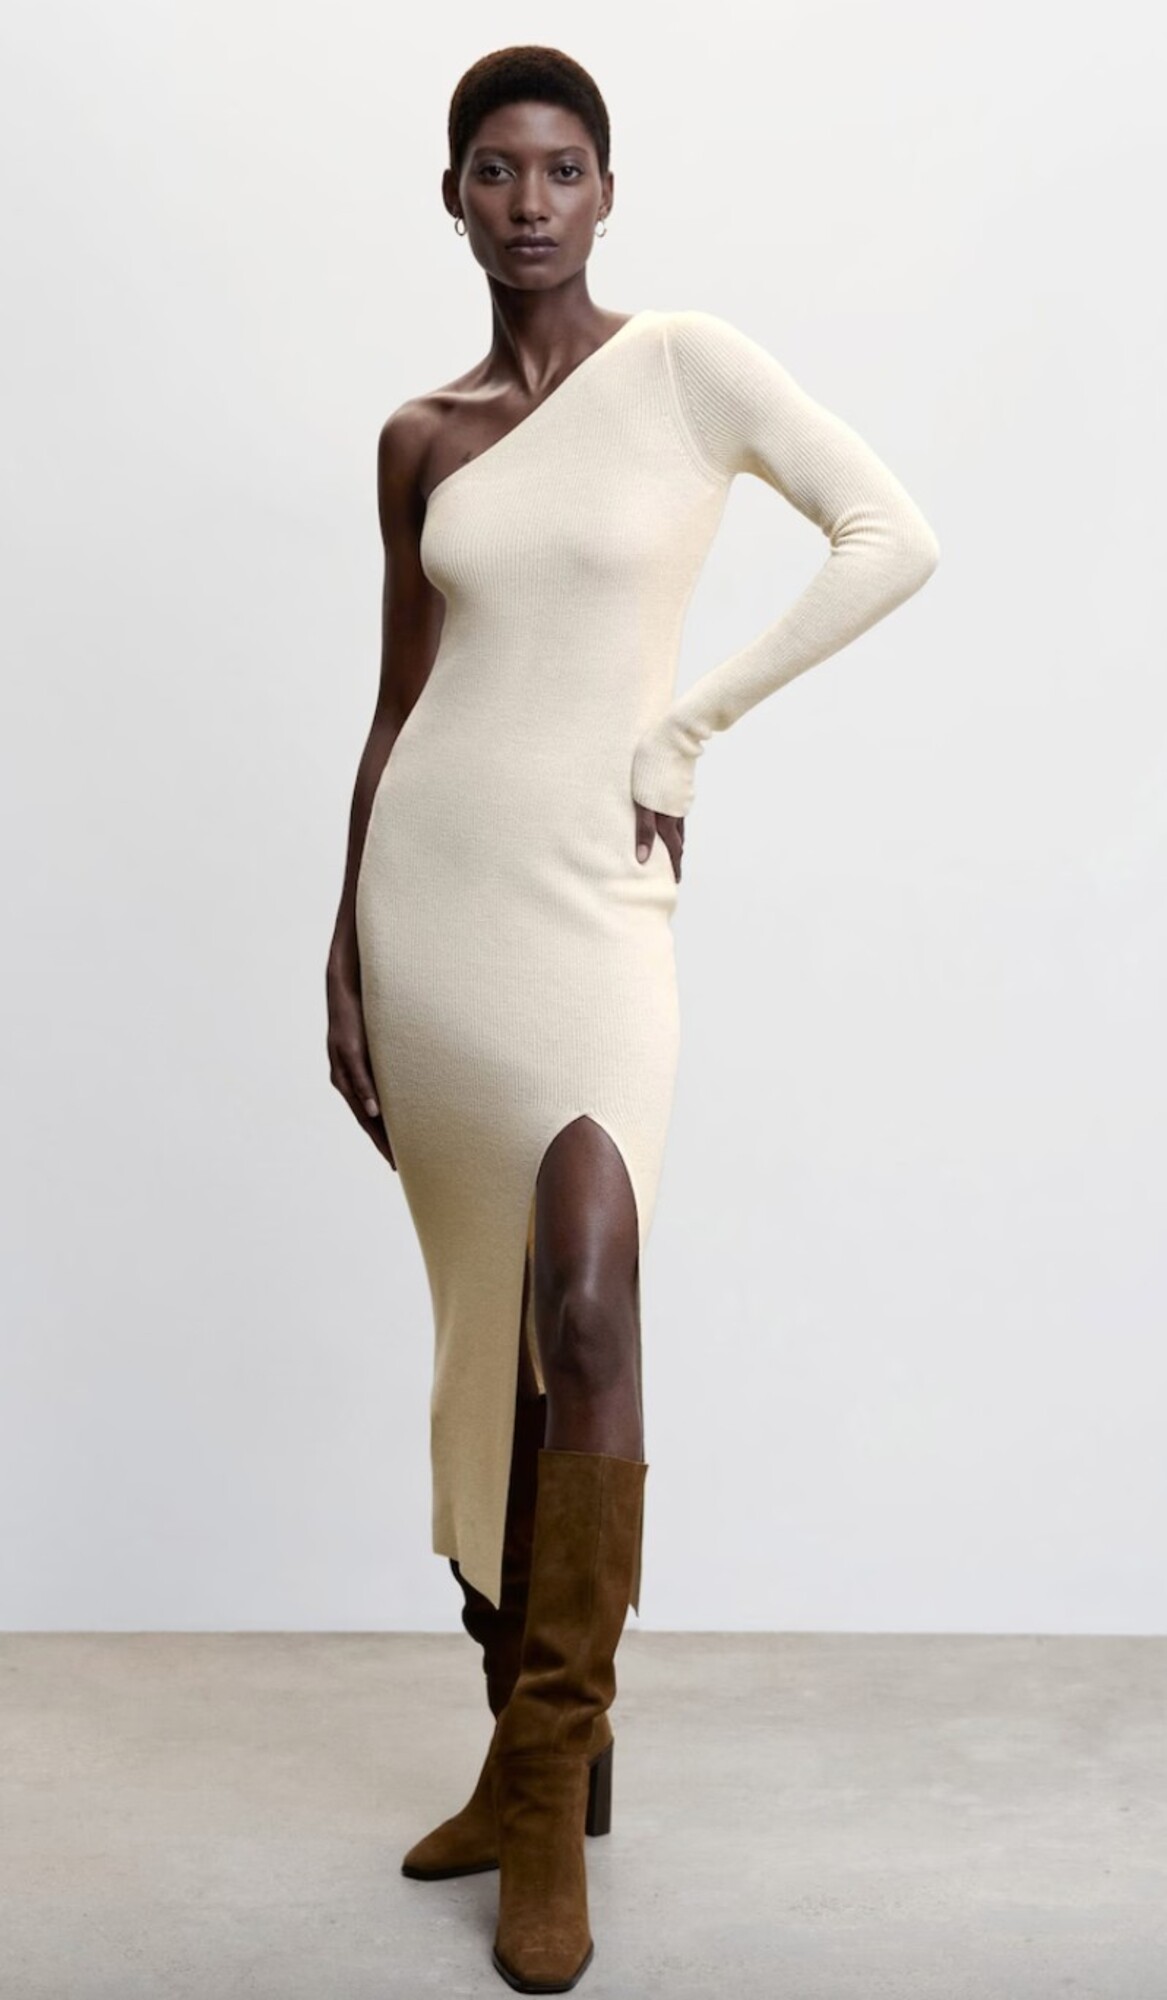 Biele šaty od značky MANGO zaujmú rozparkom, ale aj riešením na jedno rameno. Model na fotke ti ponúka spojenie elegancie a sexepílu. Mať ho môžeš za 31,92 eur.
